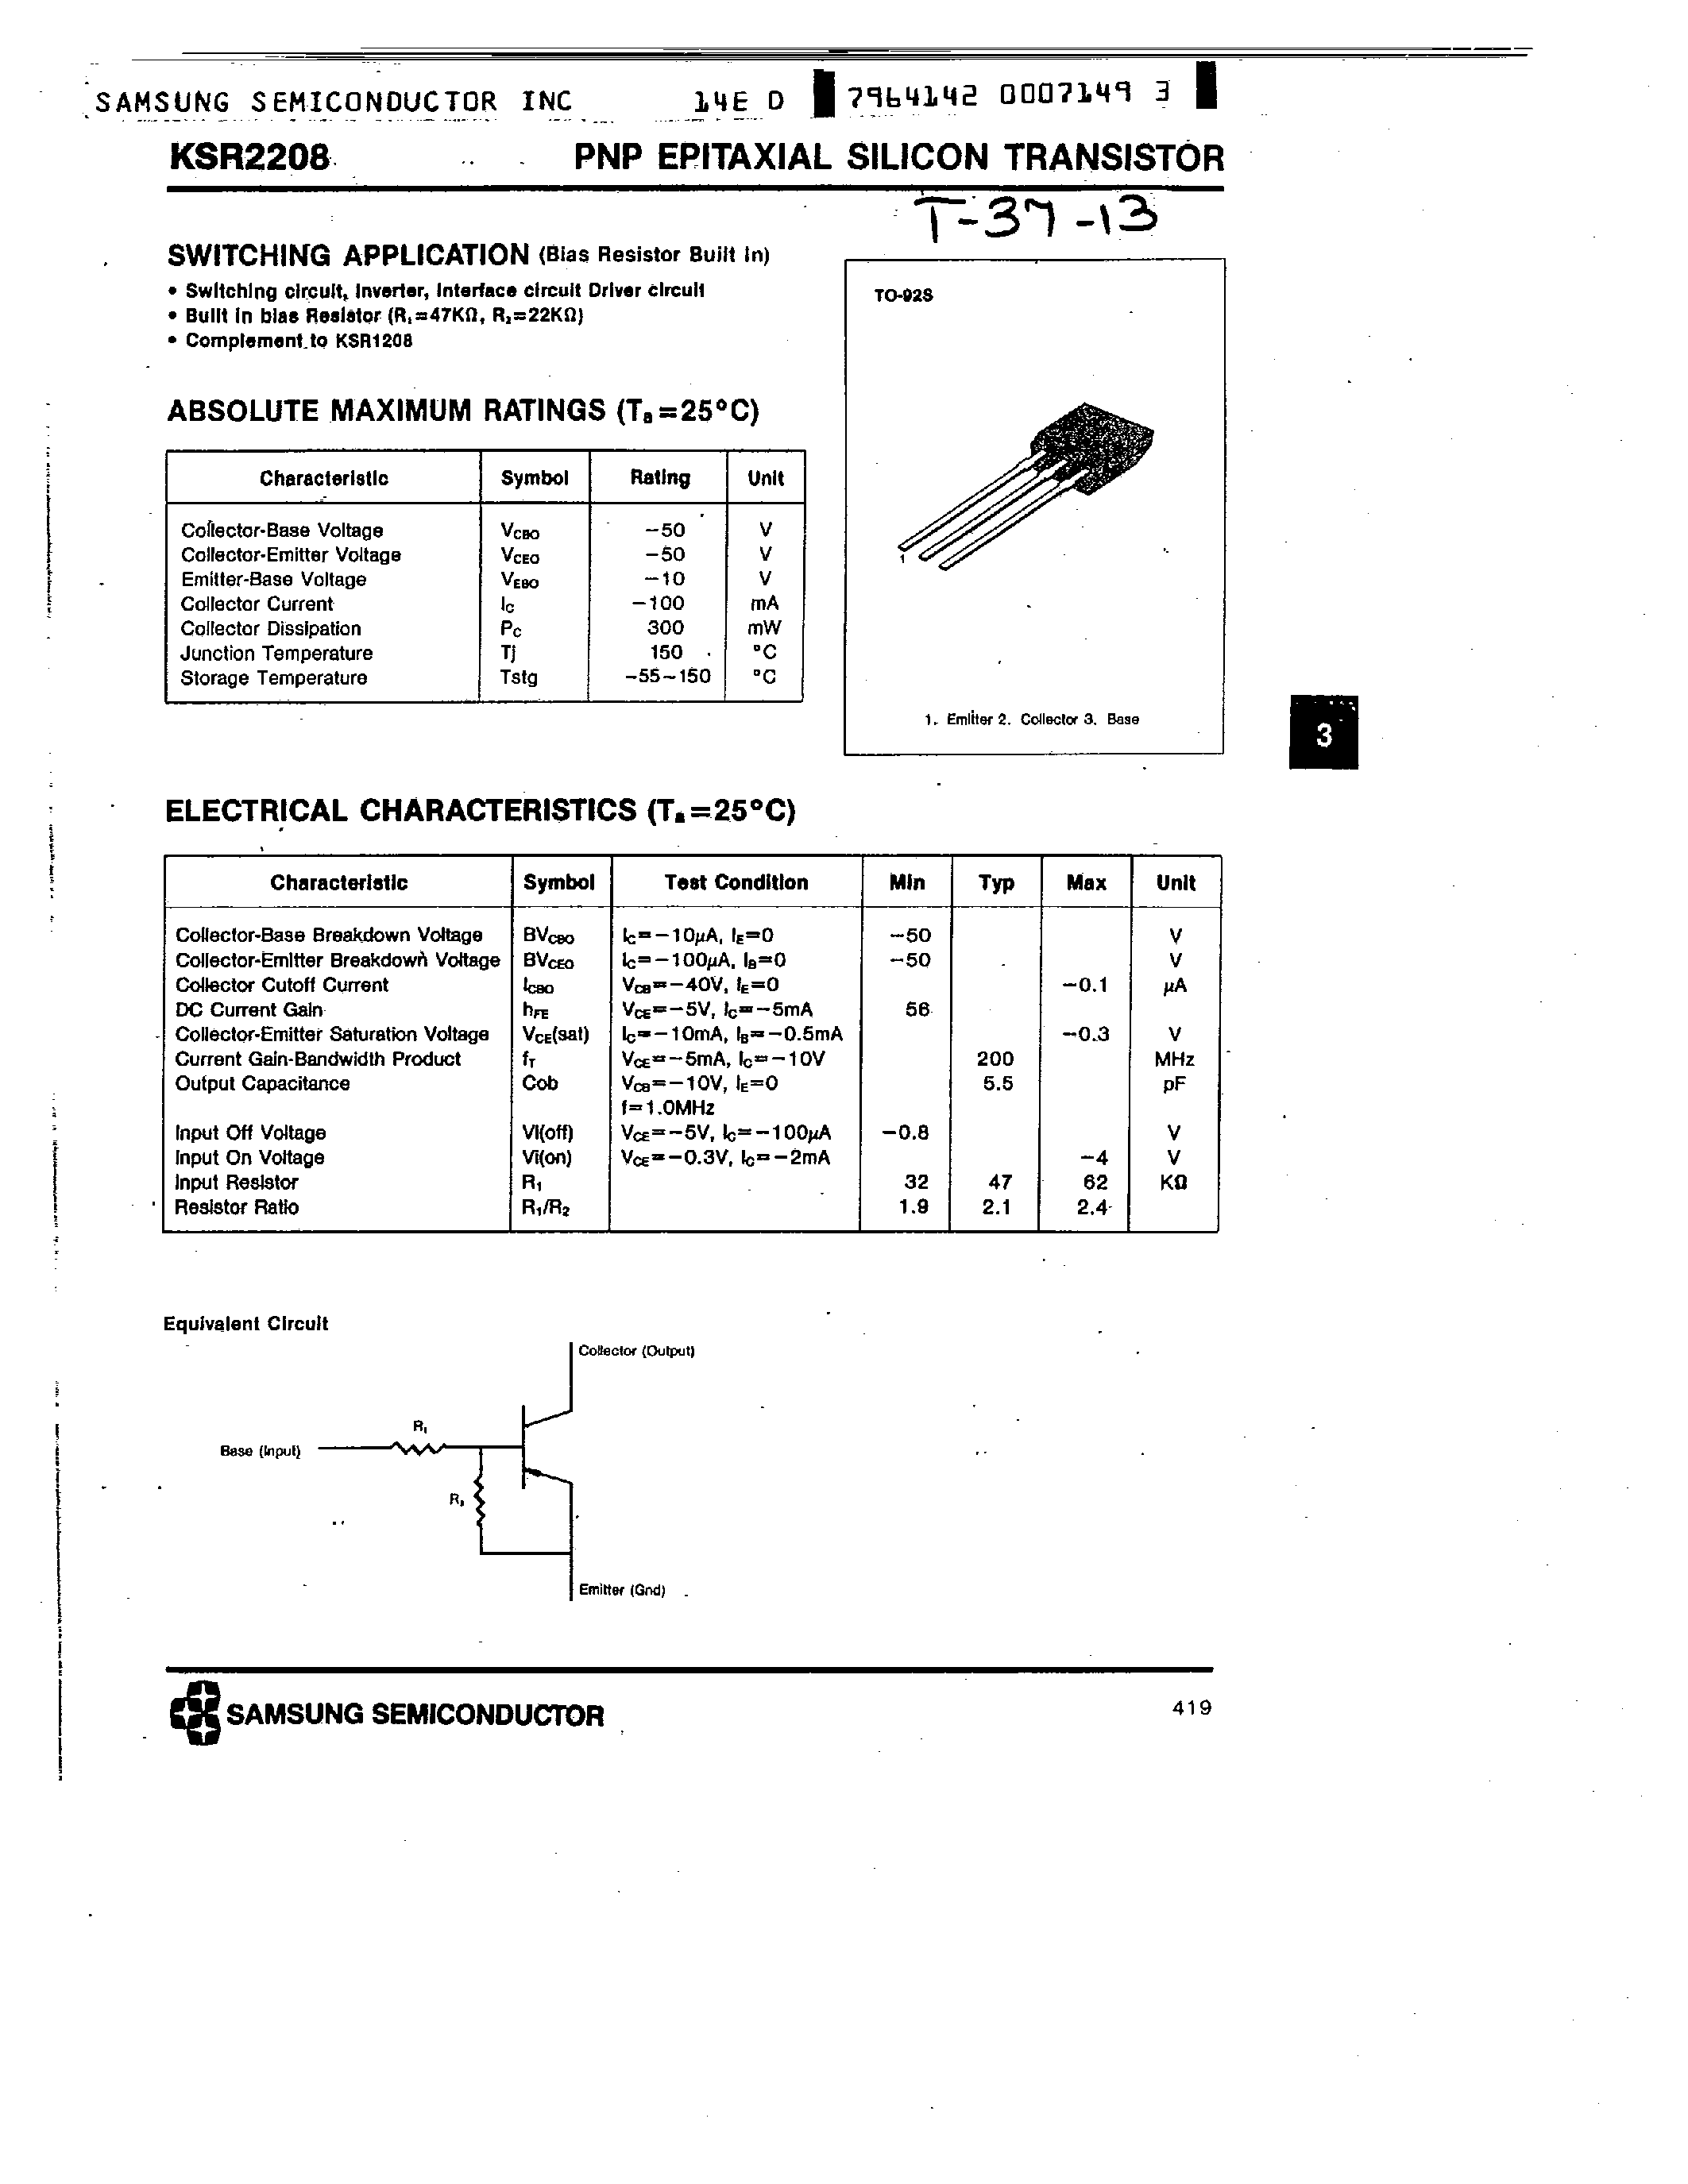 Datasheet KSR2208 - PNP (SWITCHING APPLICATION) page 1